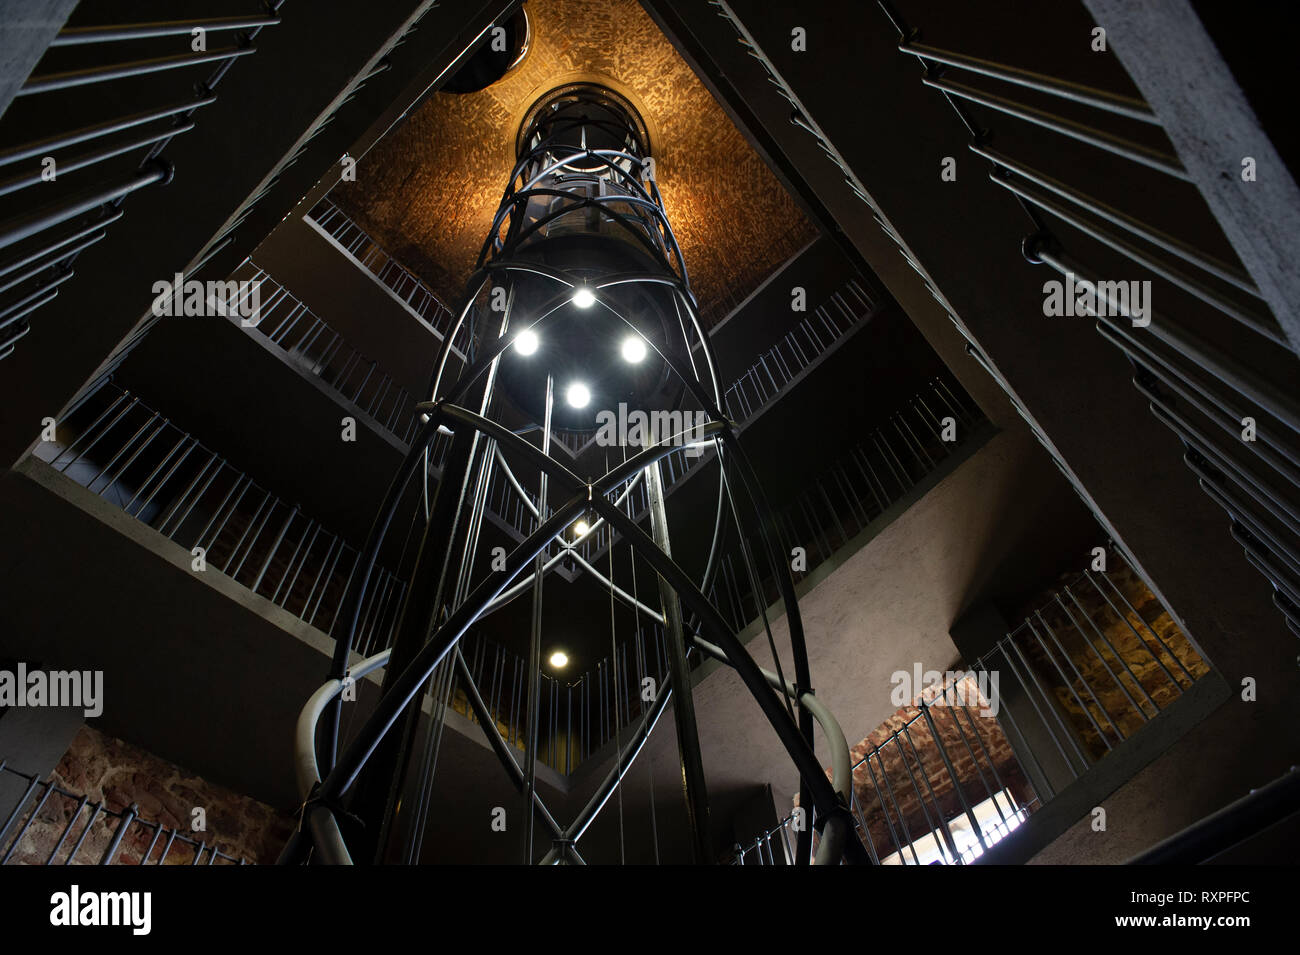 El nuevo ascensor y moderna arquitectura interior de la torre del Ayuntamiento de la Ciudad Vieja, Praga, República Checa Foto de stock